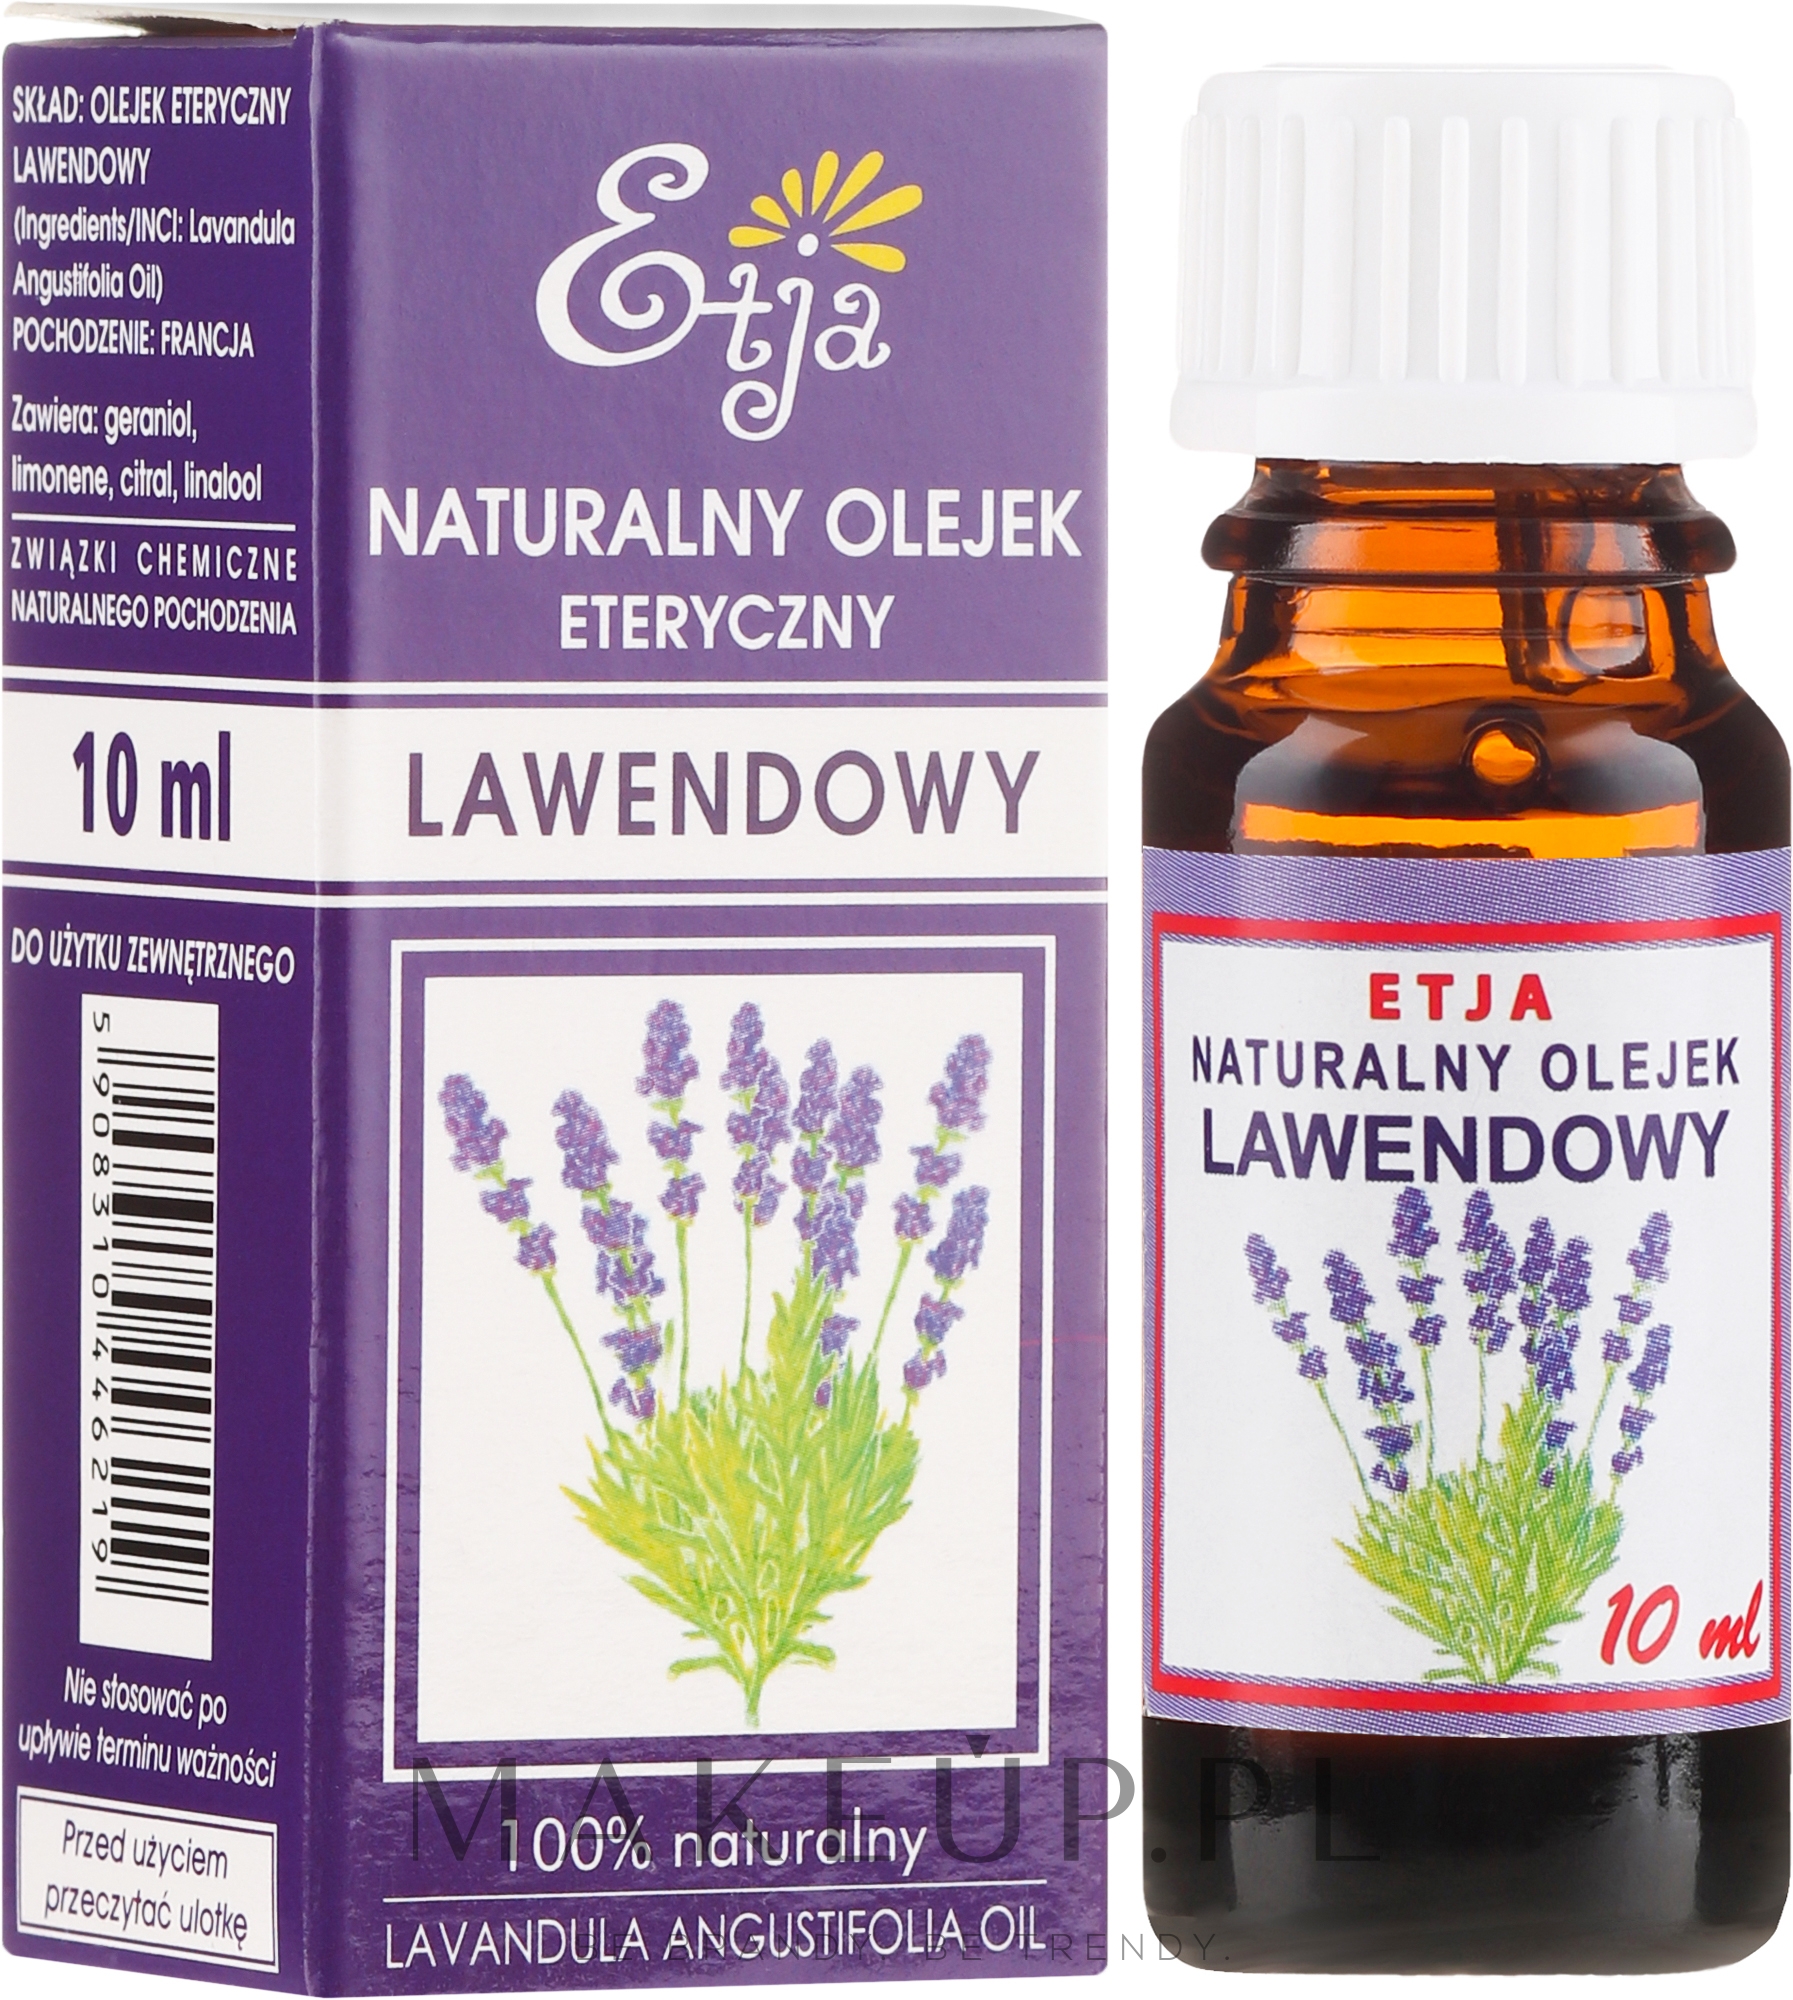 Naturalny olejek lawendowy - Etja Natural Essential Oil — Zdjęcie 10 ml